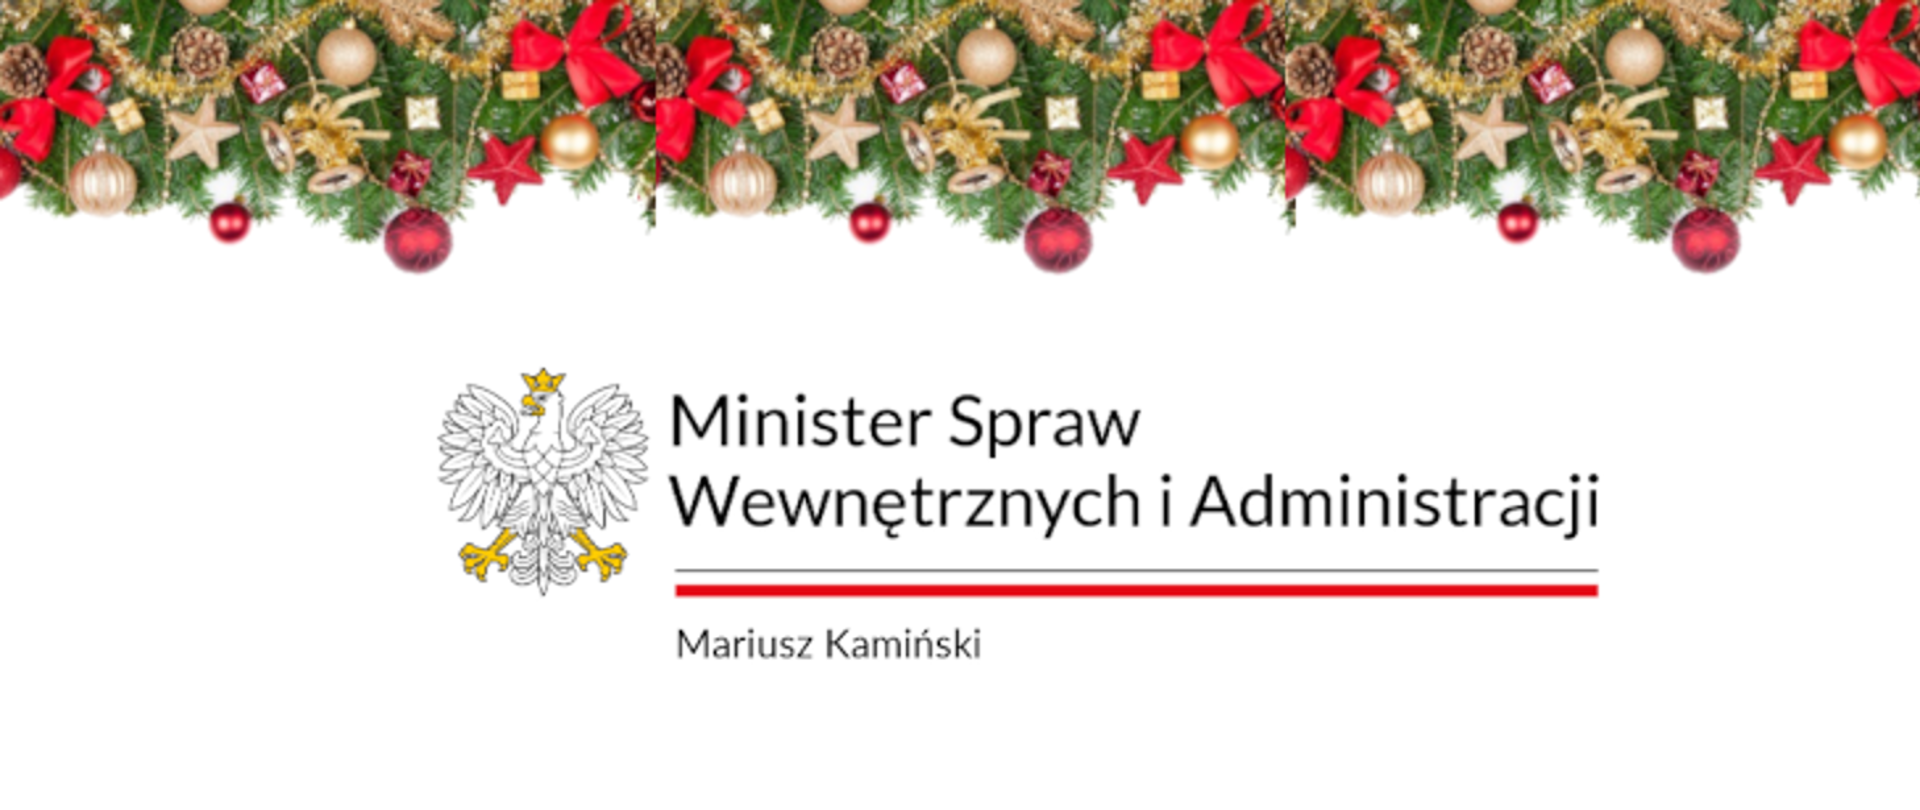 Zdjęcie przedstawia logo Ministra Spraw Wewnętrznych i Administracji ustrojone na górze ozdobami świątecznymi